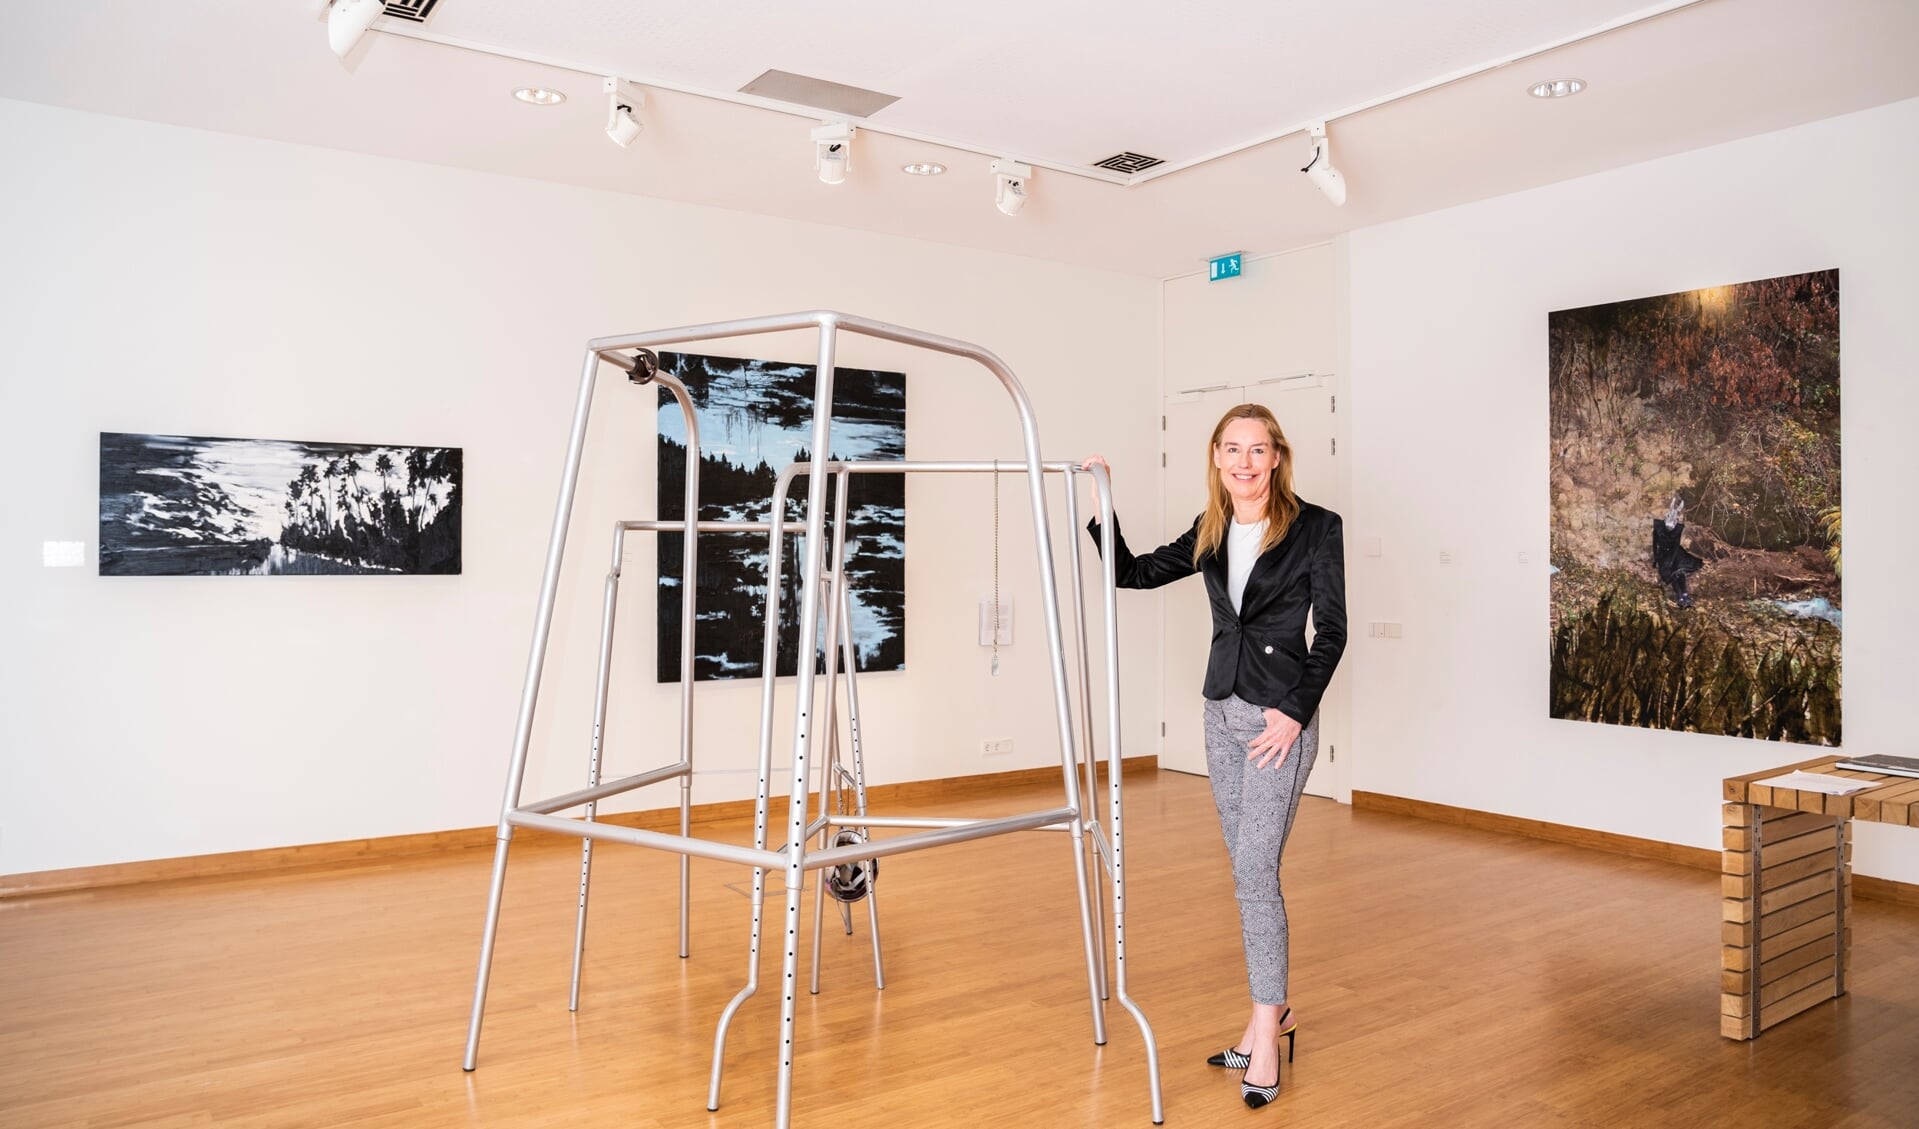 Directeur Margot Welle van Museum Nairac bij het werk Gestelle (looprek) van Man Schneider, een van de kunstwerken van de tentoonstelling Terug naar de Toekomst.